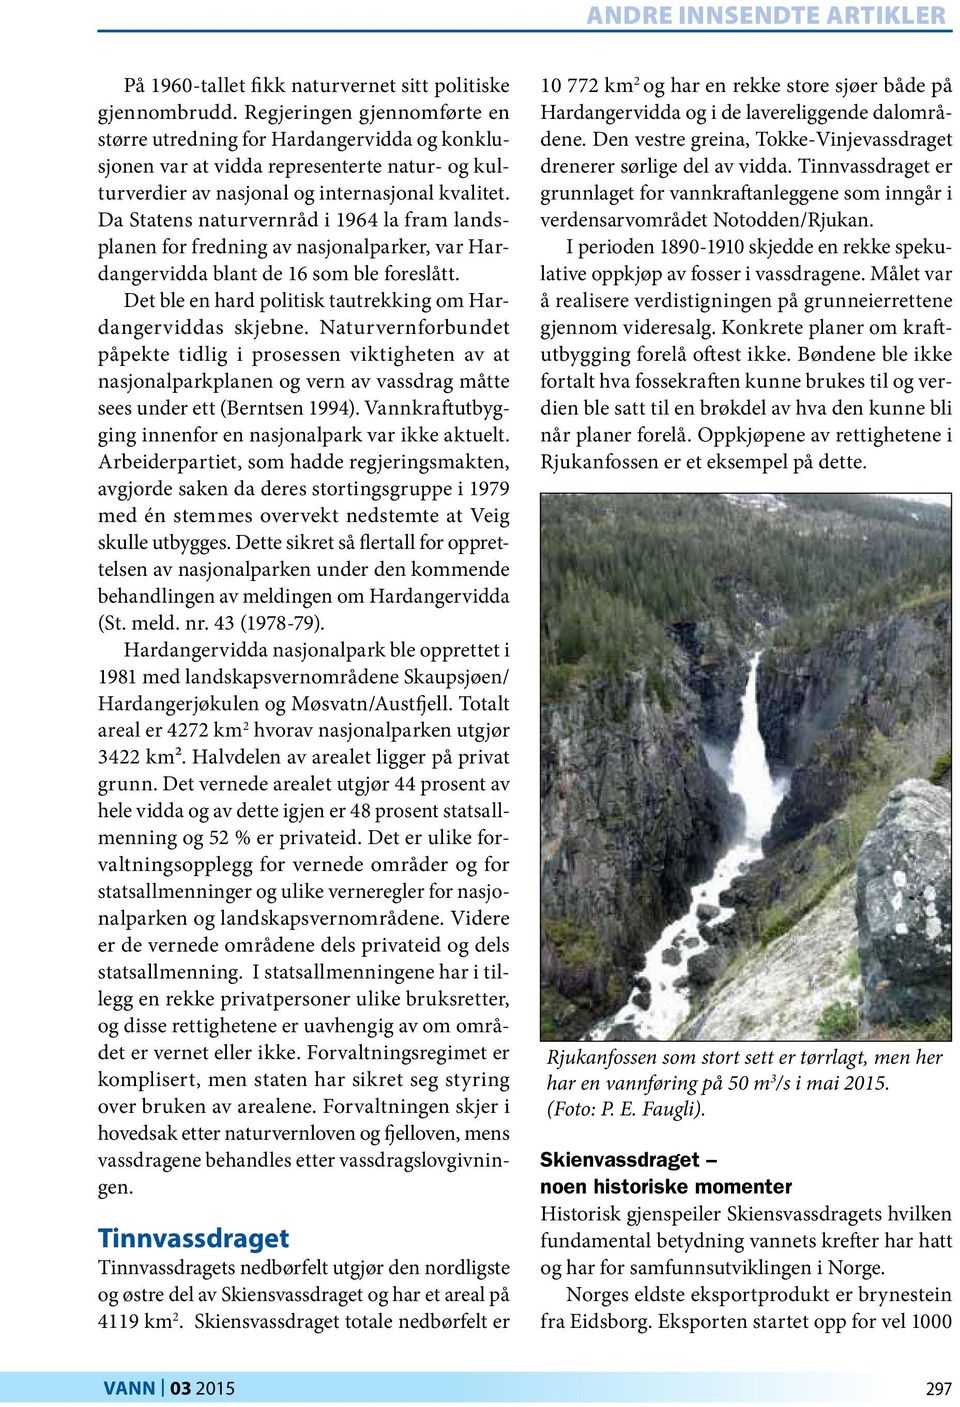 Da Statens naturvernråd i 1964 la fram landsplanen for fredning av nasjonalparker, var Hardangervidda blant de 16 som ble foreslått. Det ble en hard politisk tautrekking om Hardangerviddas skjebne.